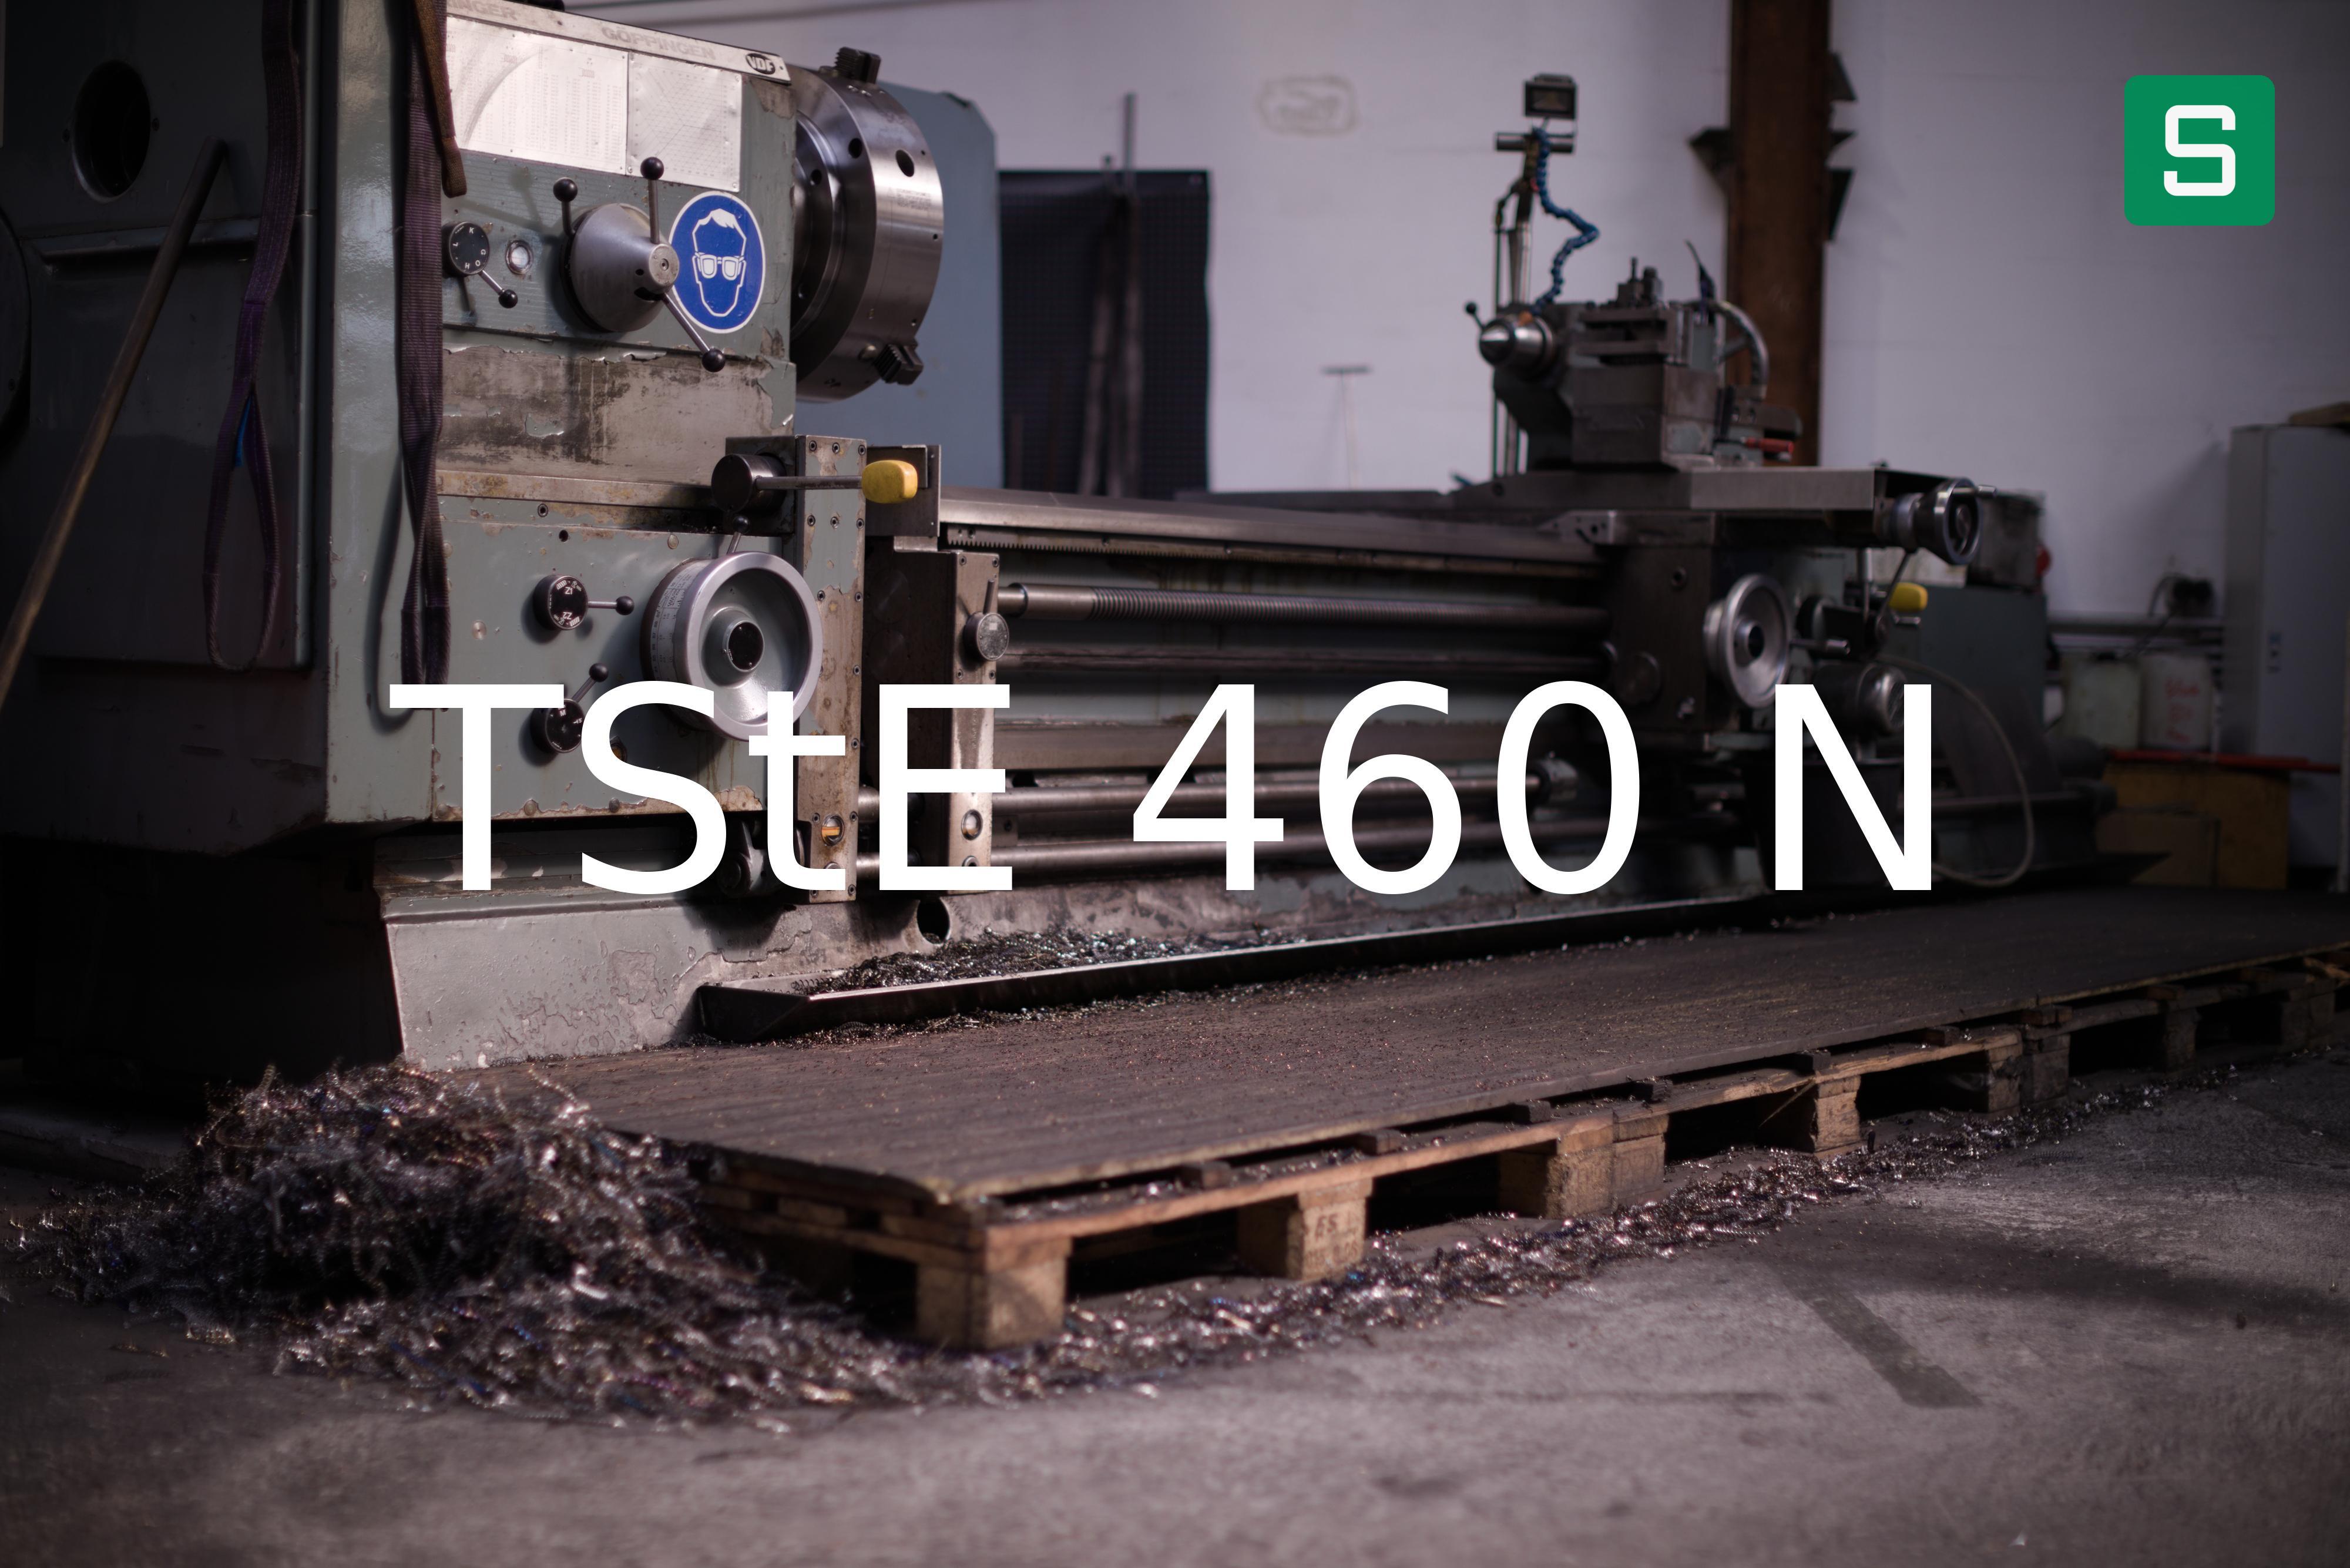 Steel Material: TStE 460 N